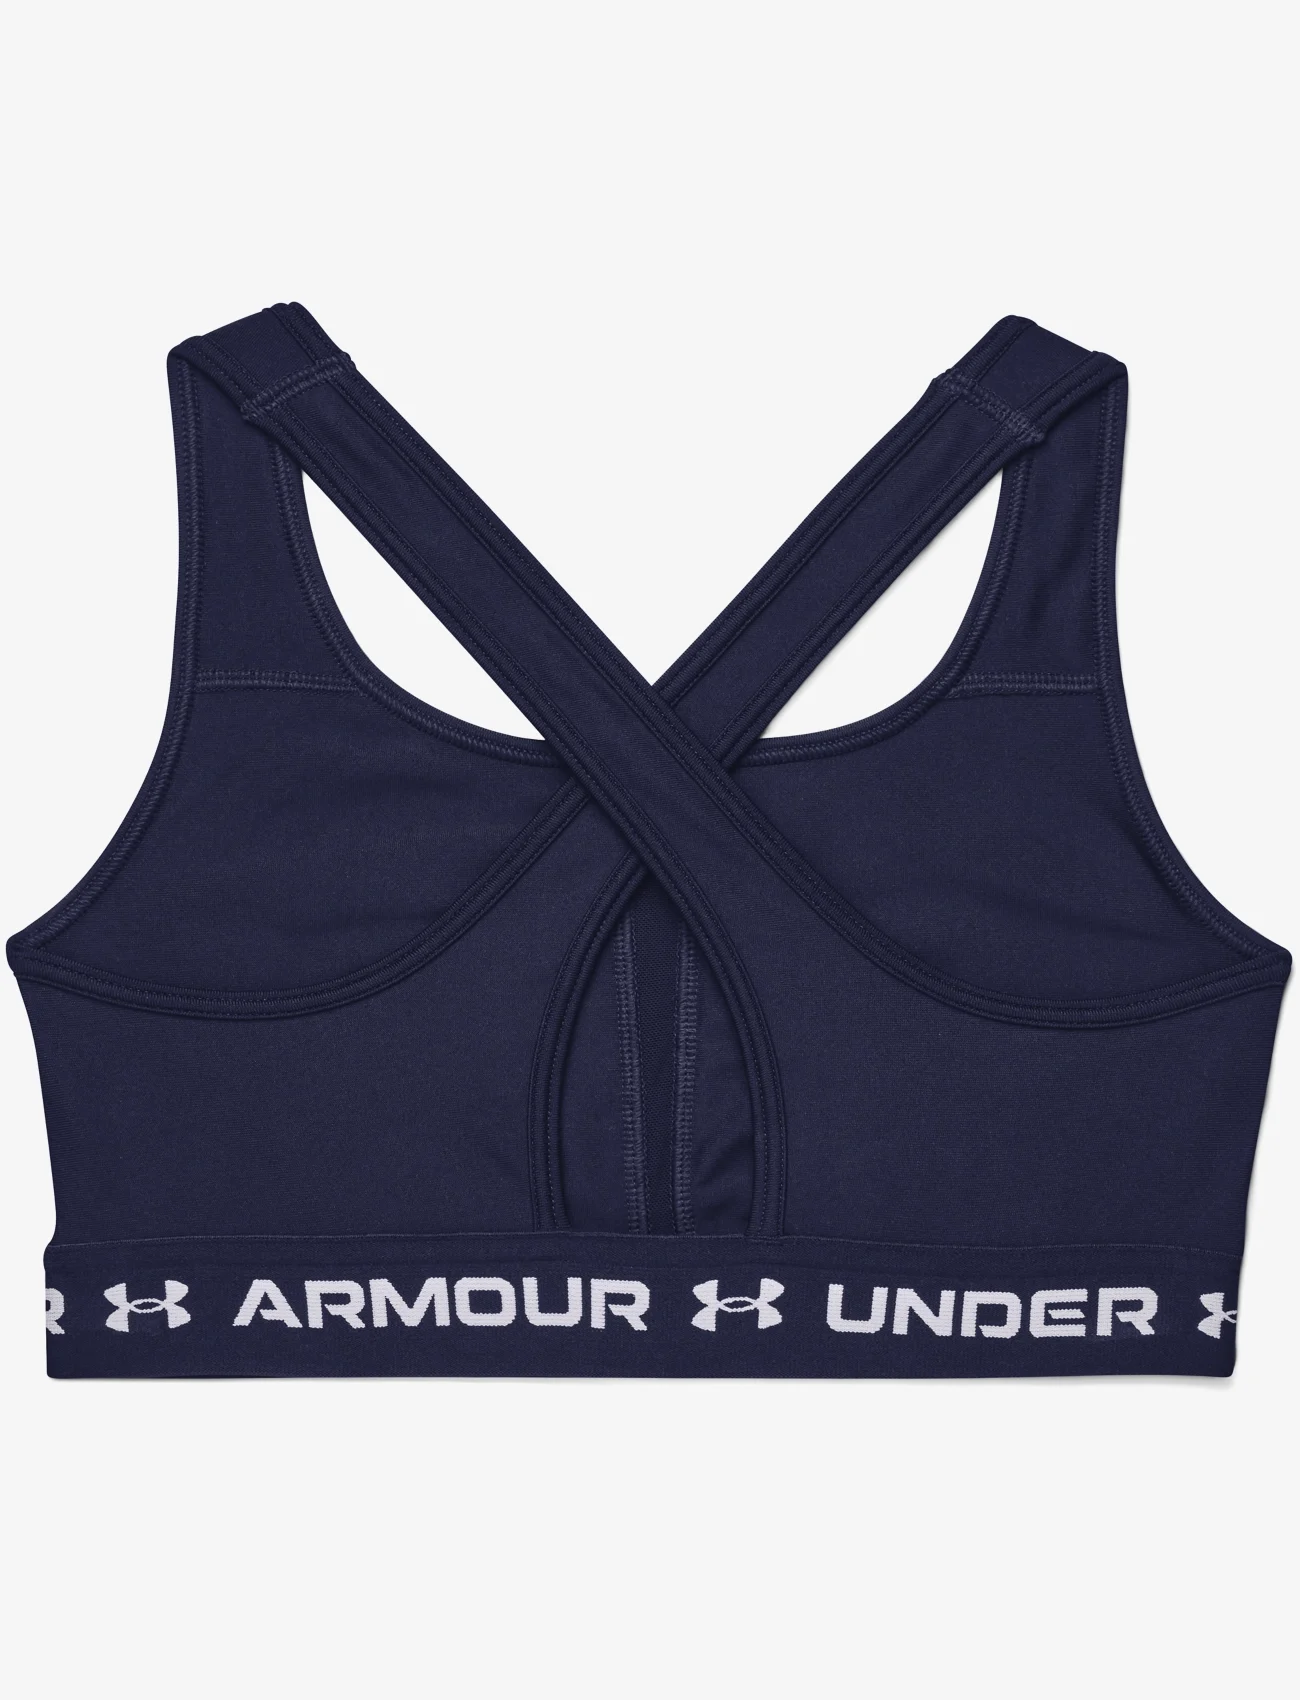 Under Armour - Crossback Mid Bra - sport-bhs: mittlerer halt - blue - 1